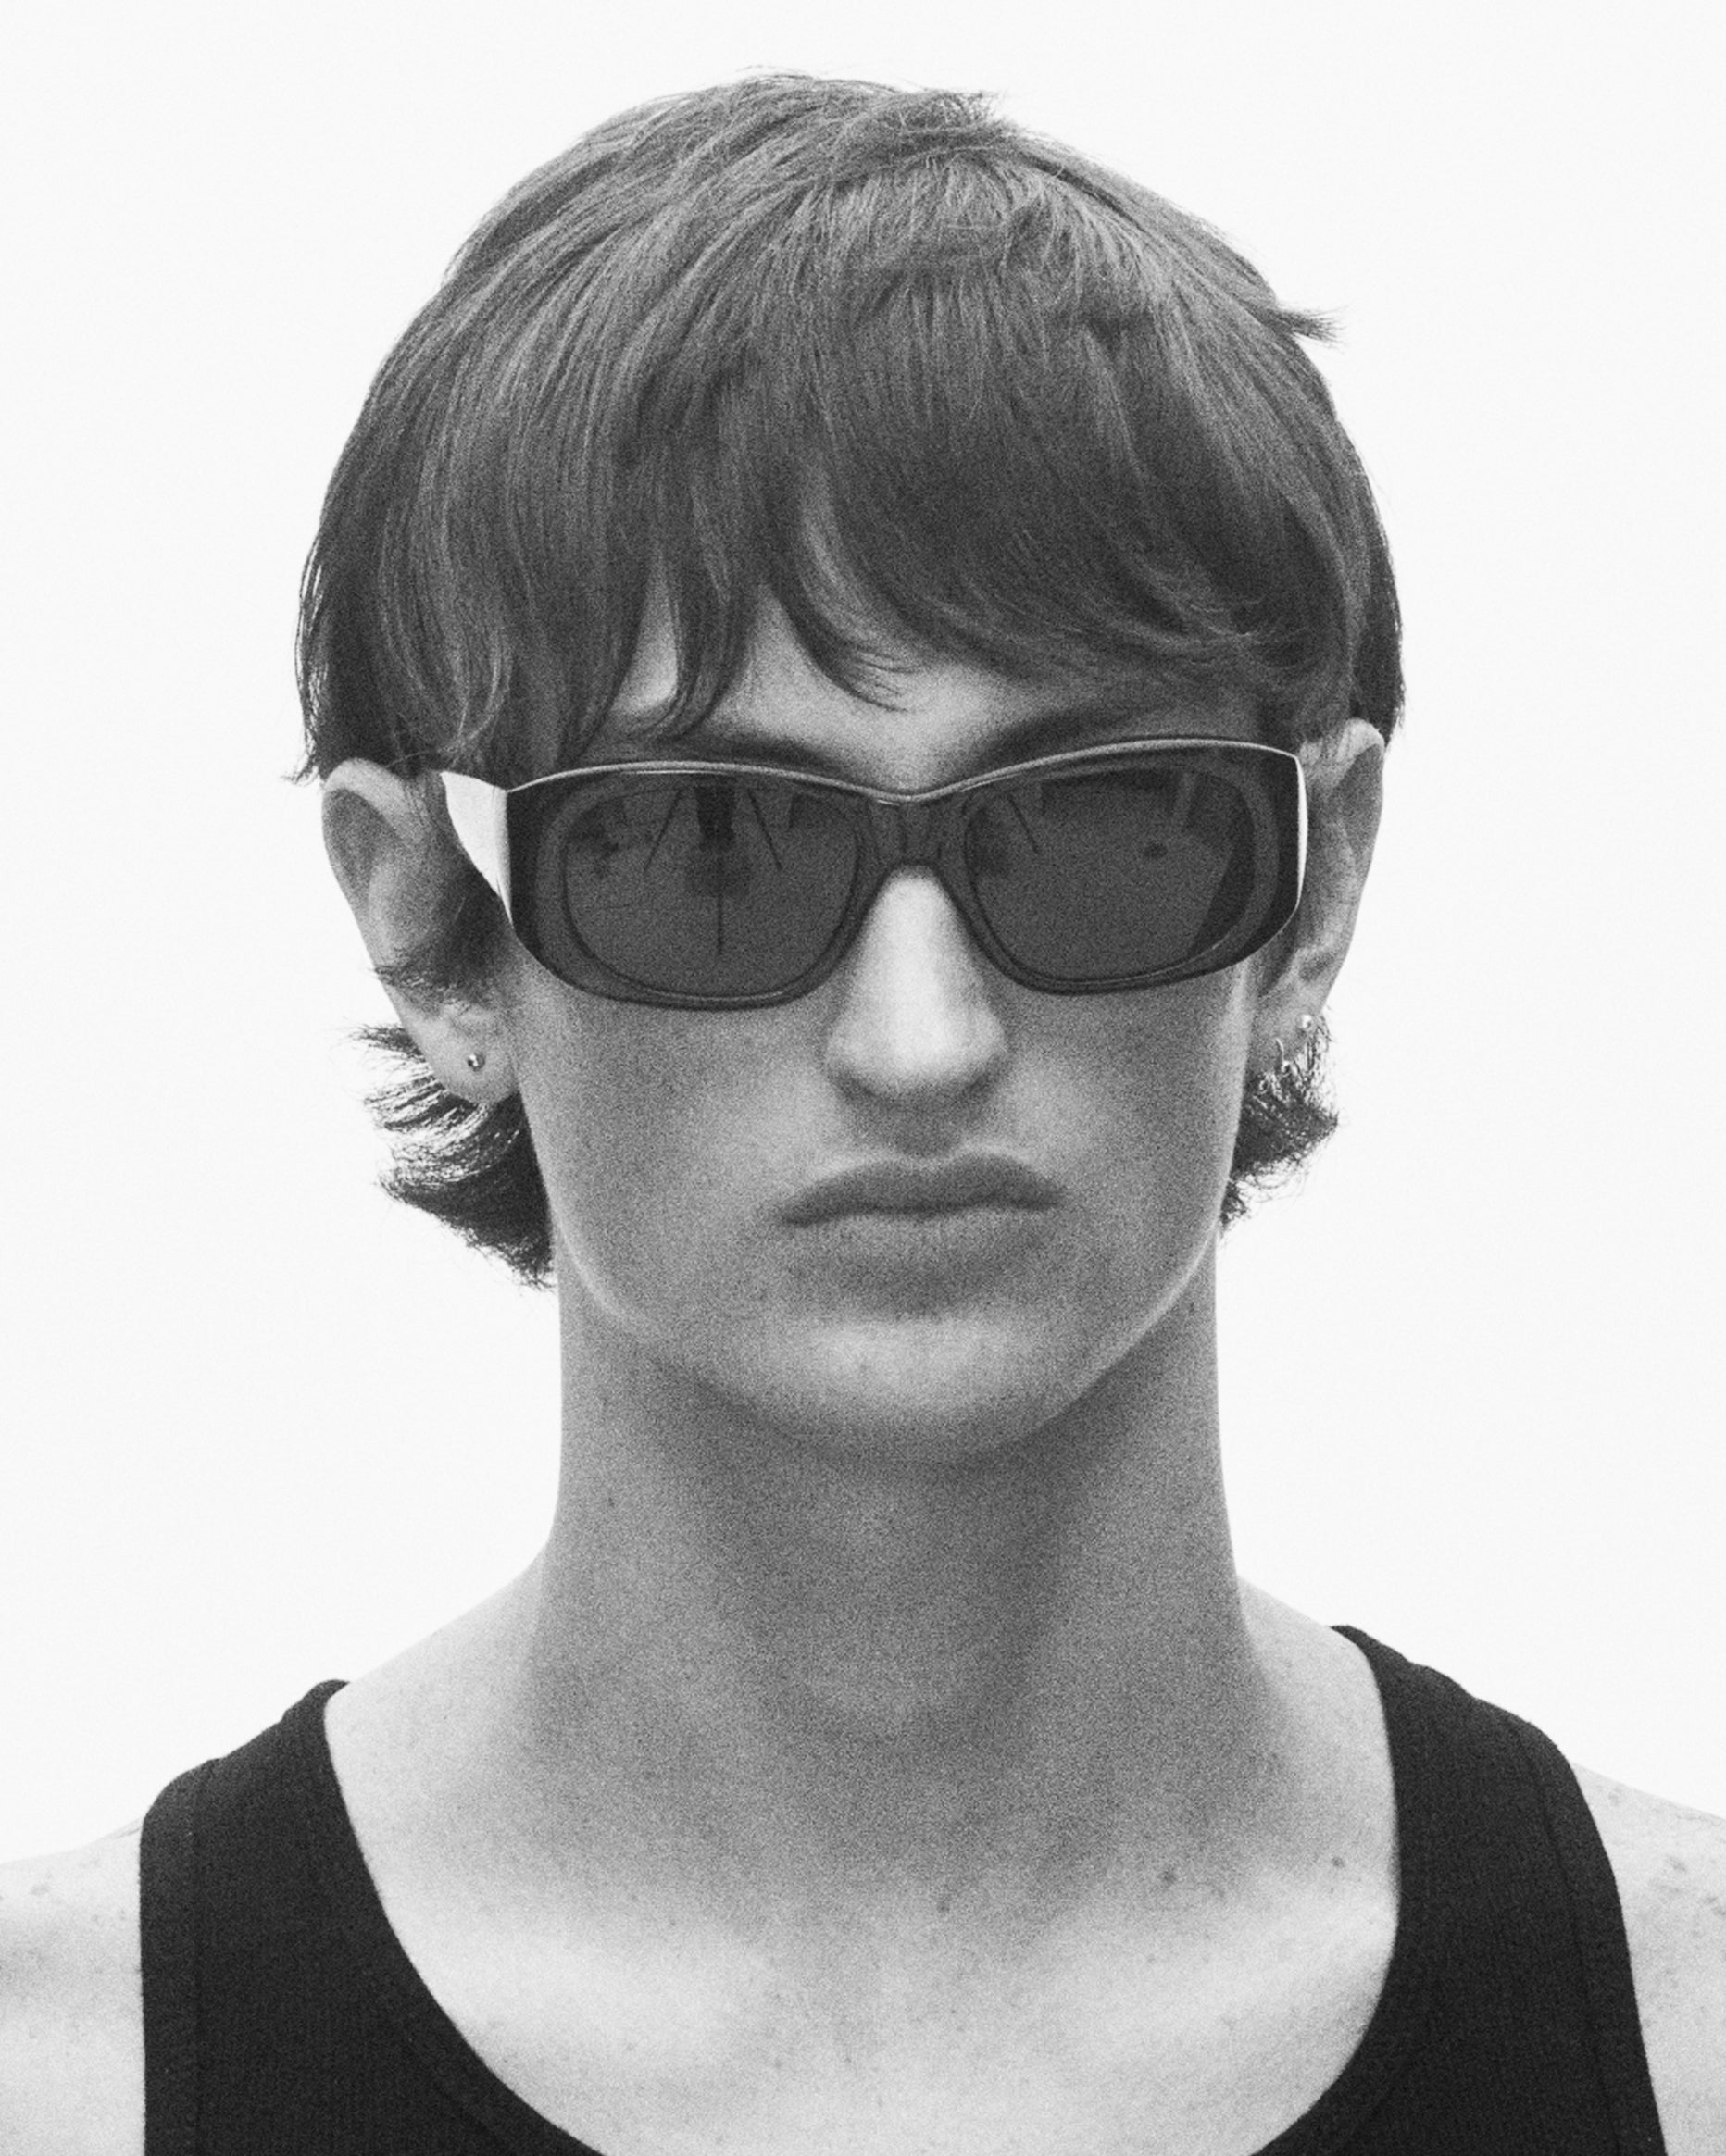 model wearing sunglasses, facing forward